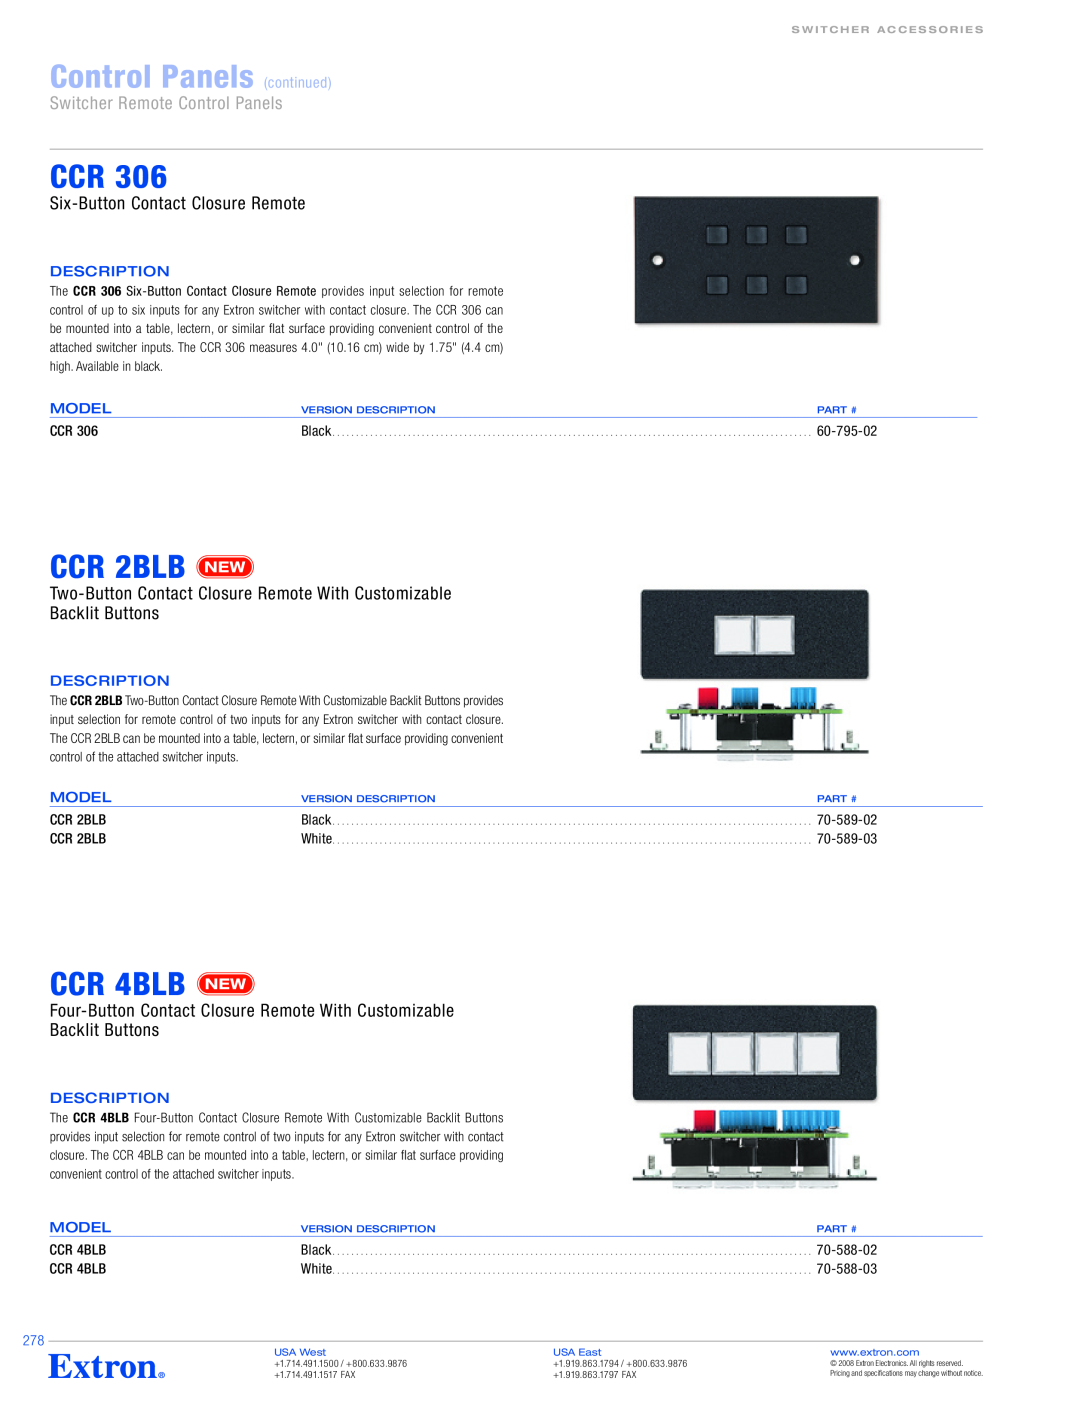 Extron electronic SCP 104 Series CCR 2BLB, CCR 4BLB, Six-Button Contact Closure Remote, 60-795-02, Description, Model 